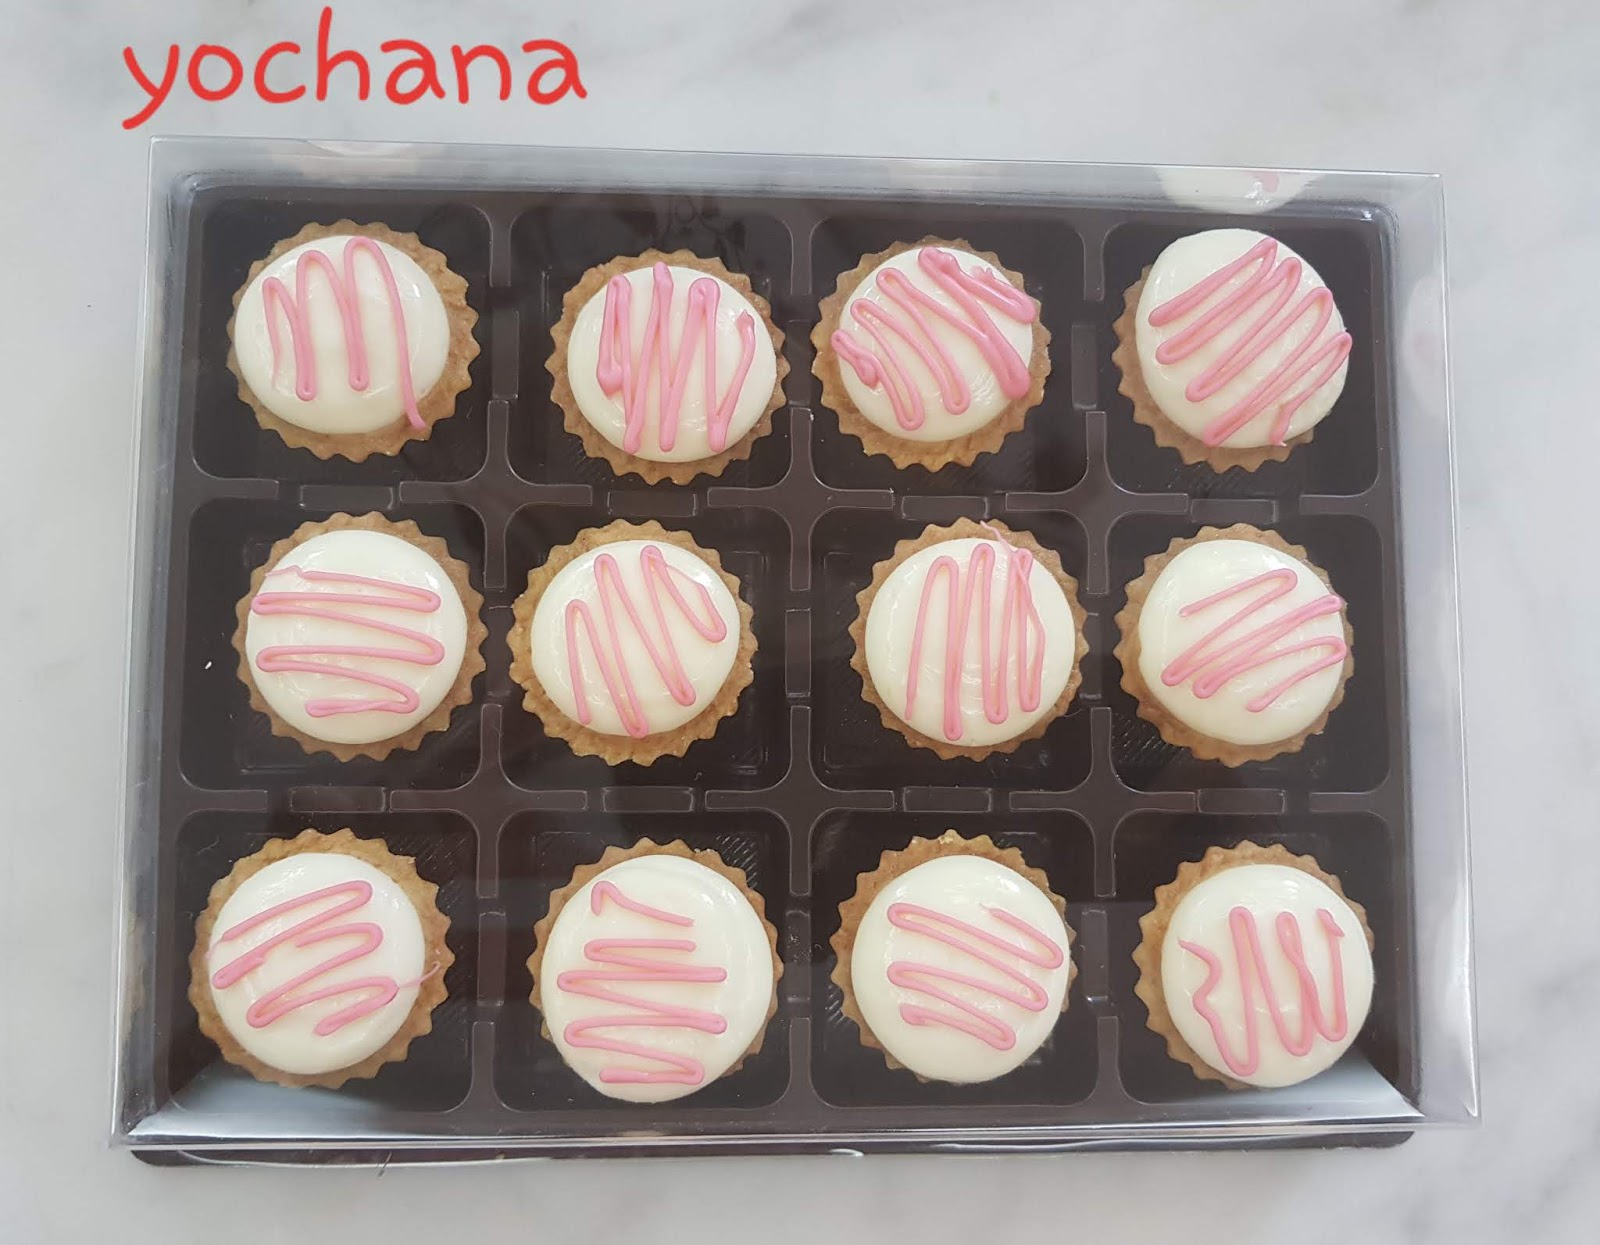 Yochana's Cake Delight! : Nutella Cheese Tart